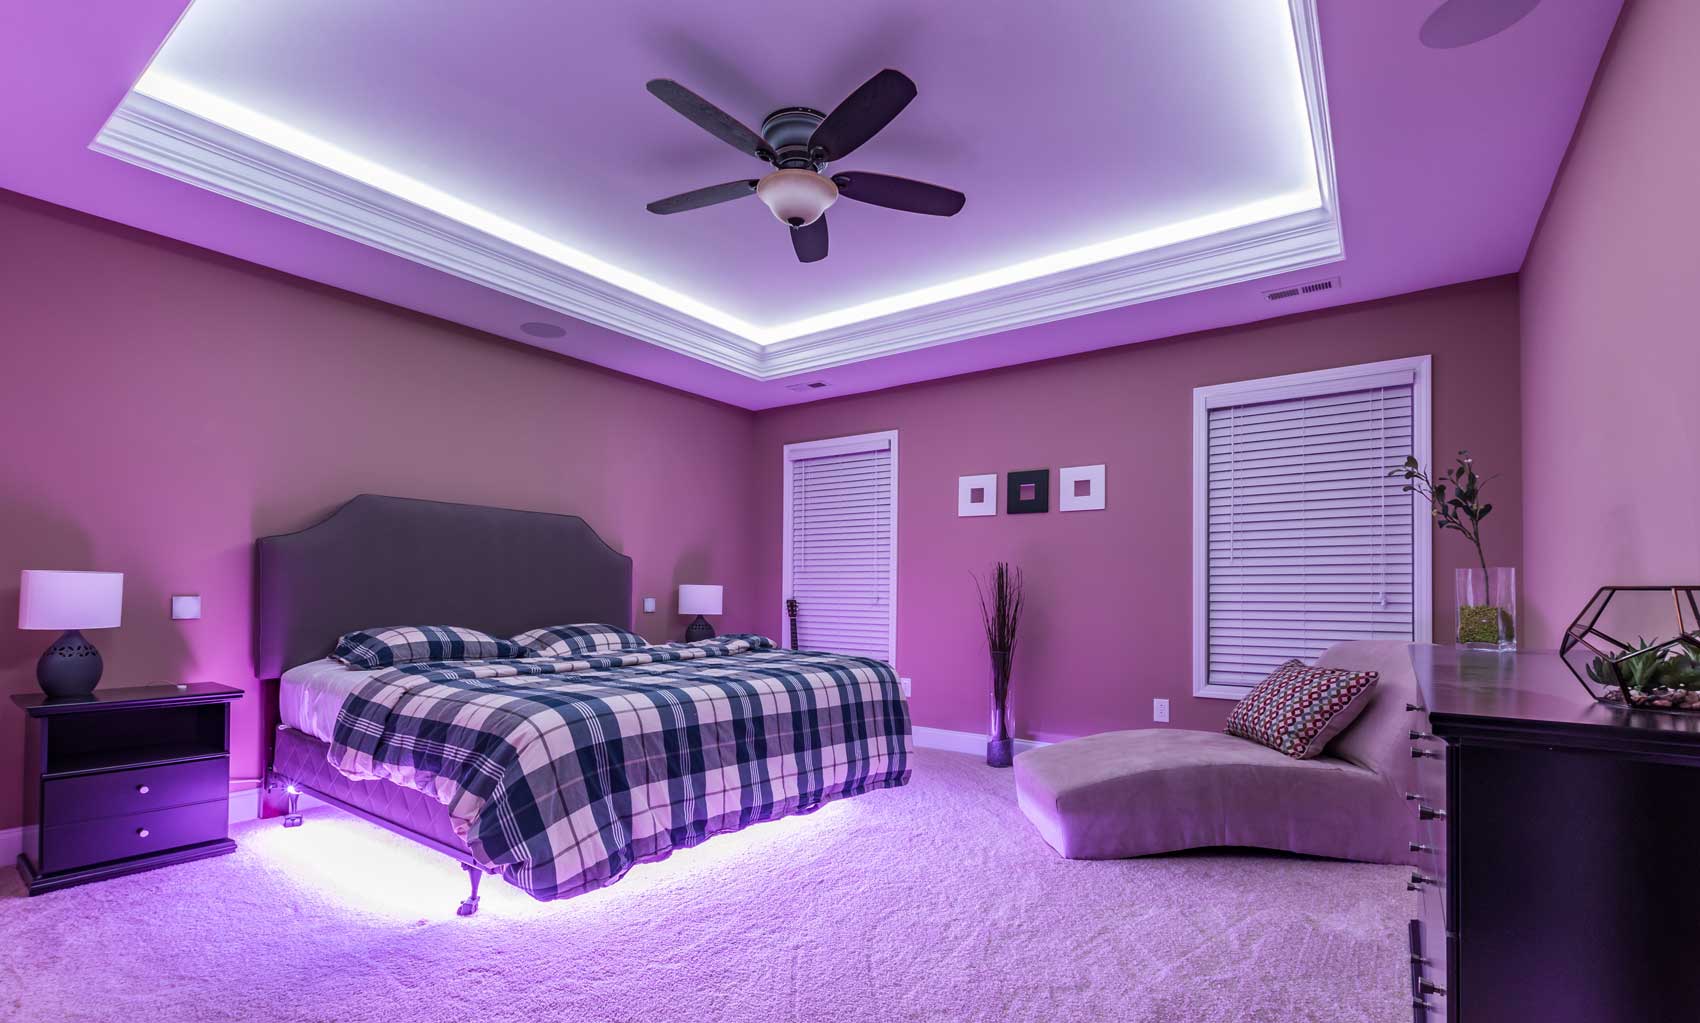 Bedroom Led Lights For Room Decoration